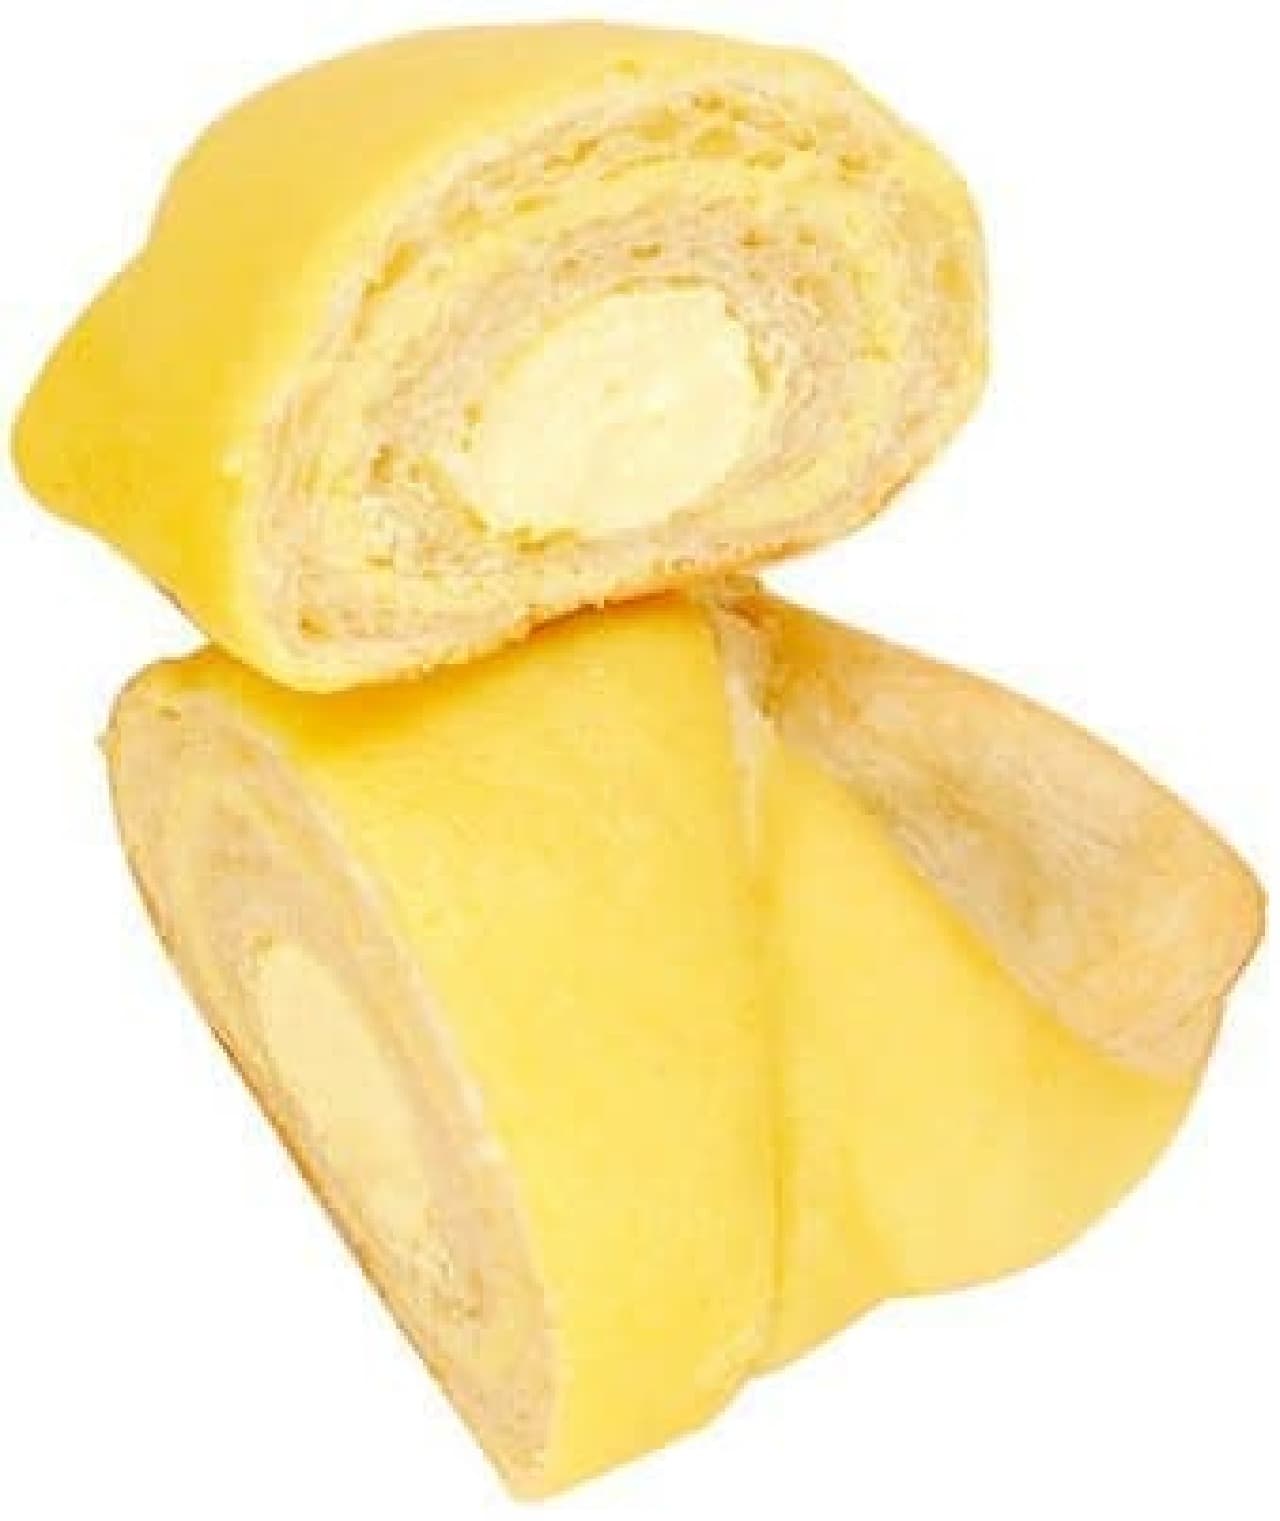 "Lemon" bread and sweets for FamilyMart